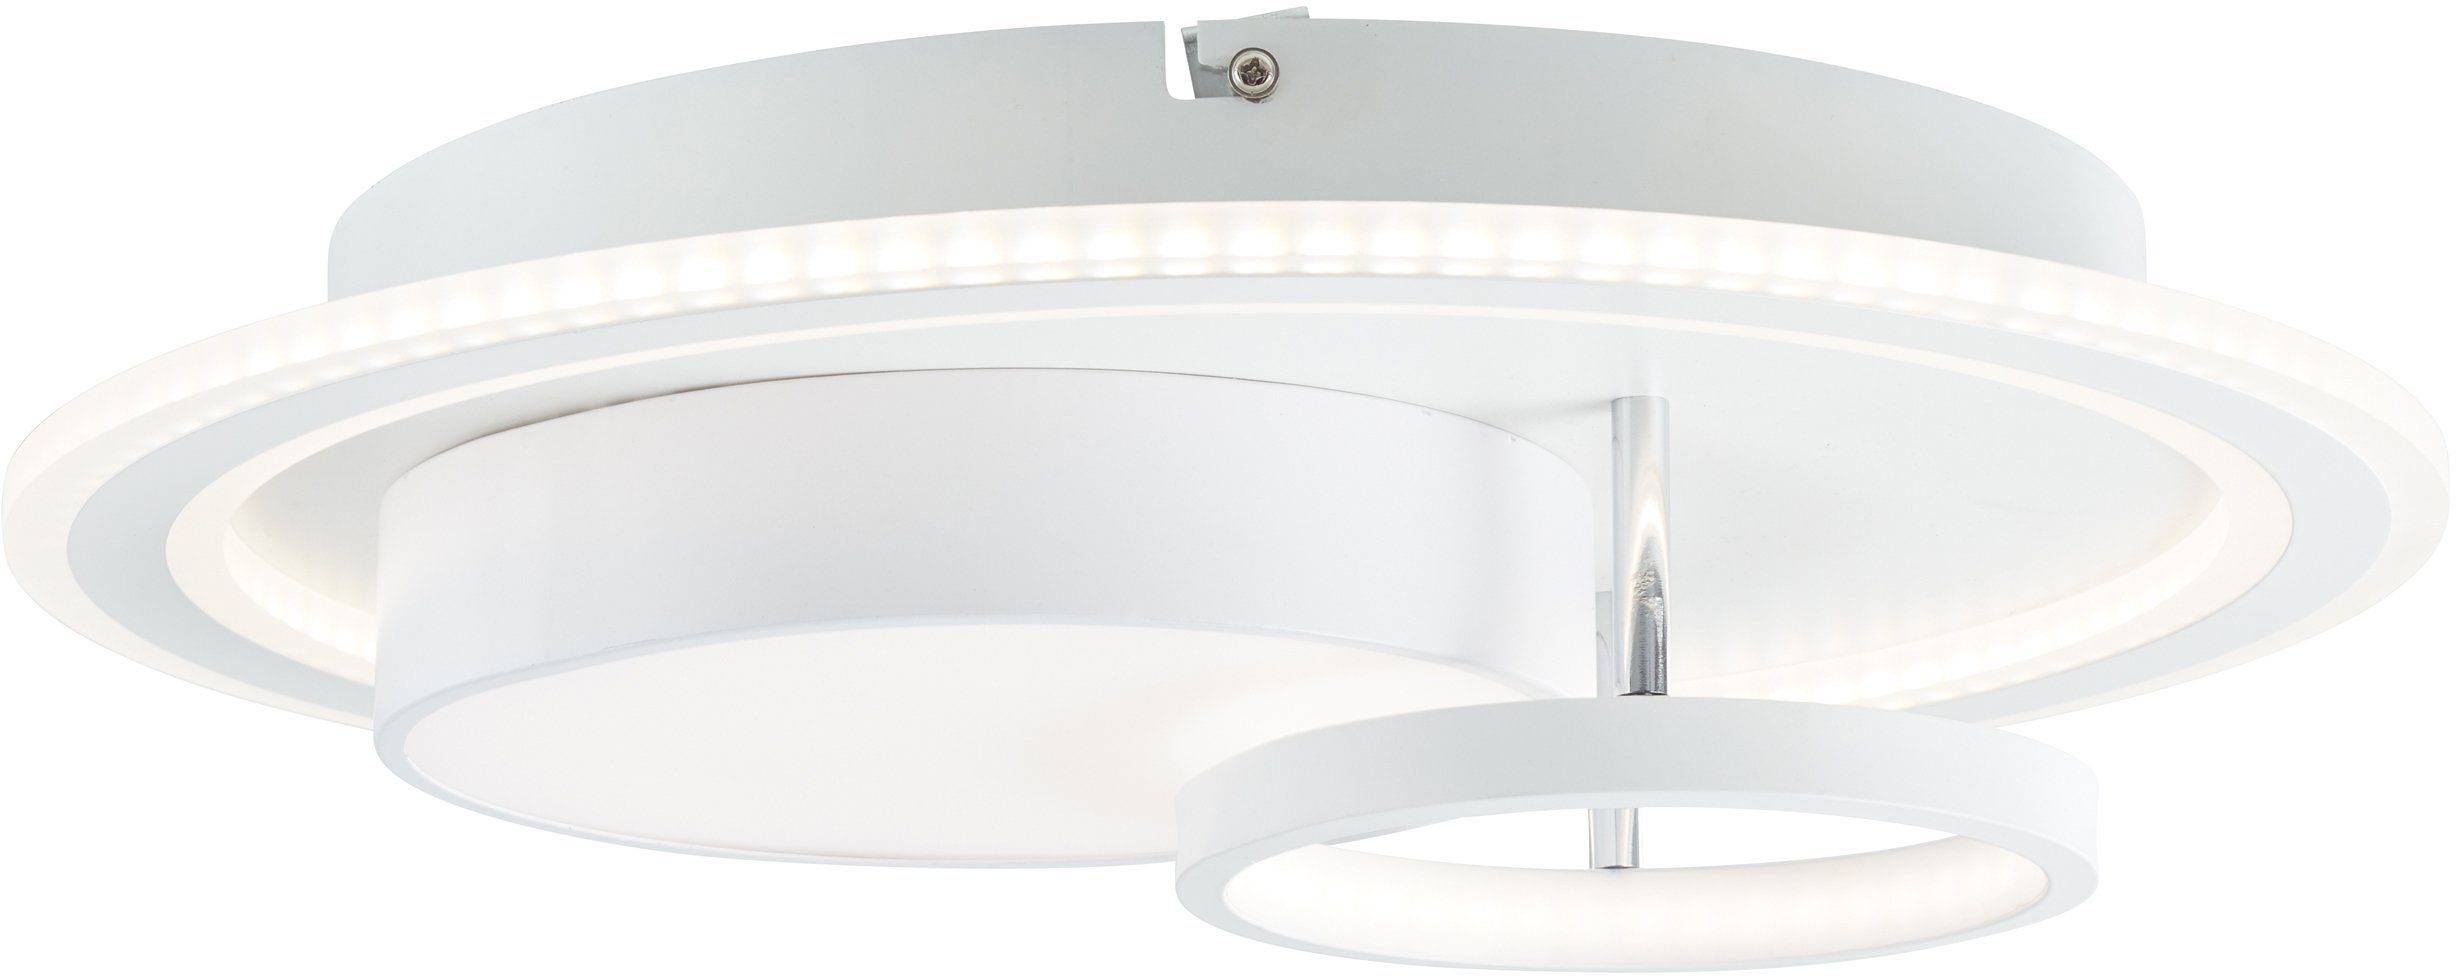 Brilliant Deckenleuchte Sigune, 3000K, Lampe, Sigune LED Deckenleuchte  40x40cm weiß/schwarz, 1x LED integrier